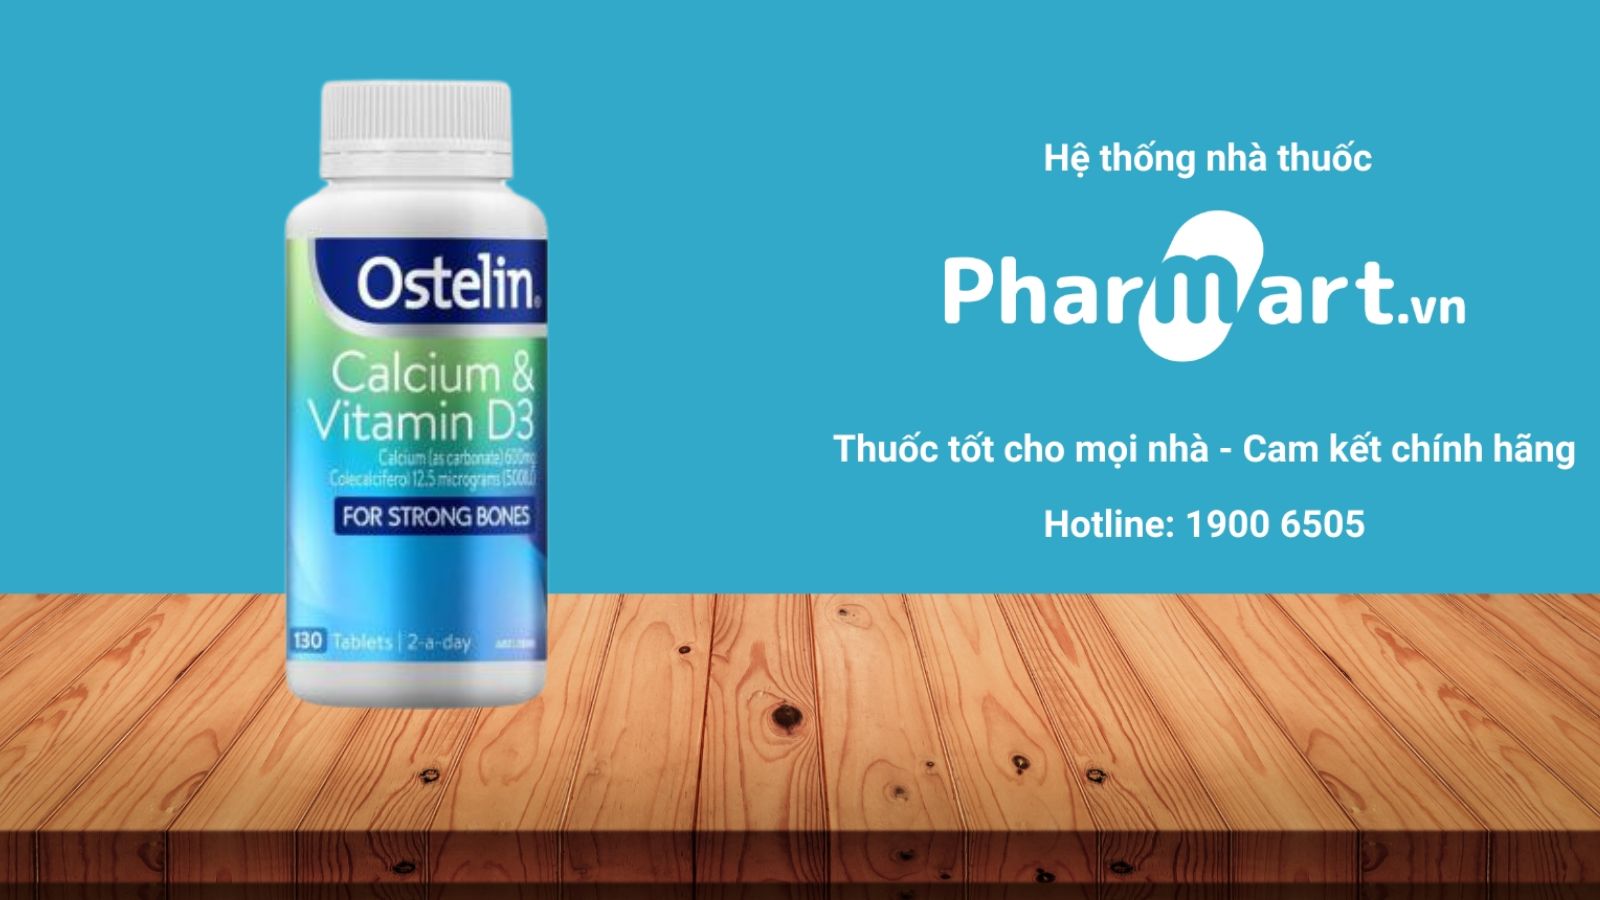 Mua Ostelin Calcium & Vitamin D3 Chính Hãng Tại Pharmart Vn[1]